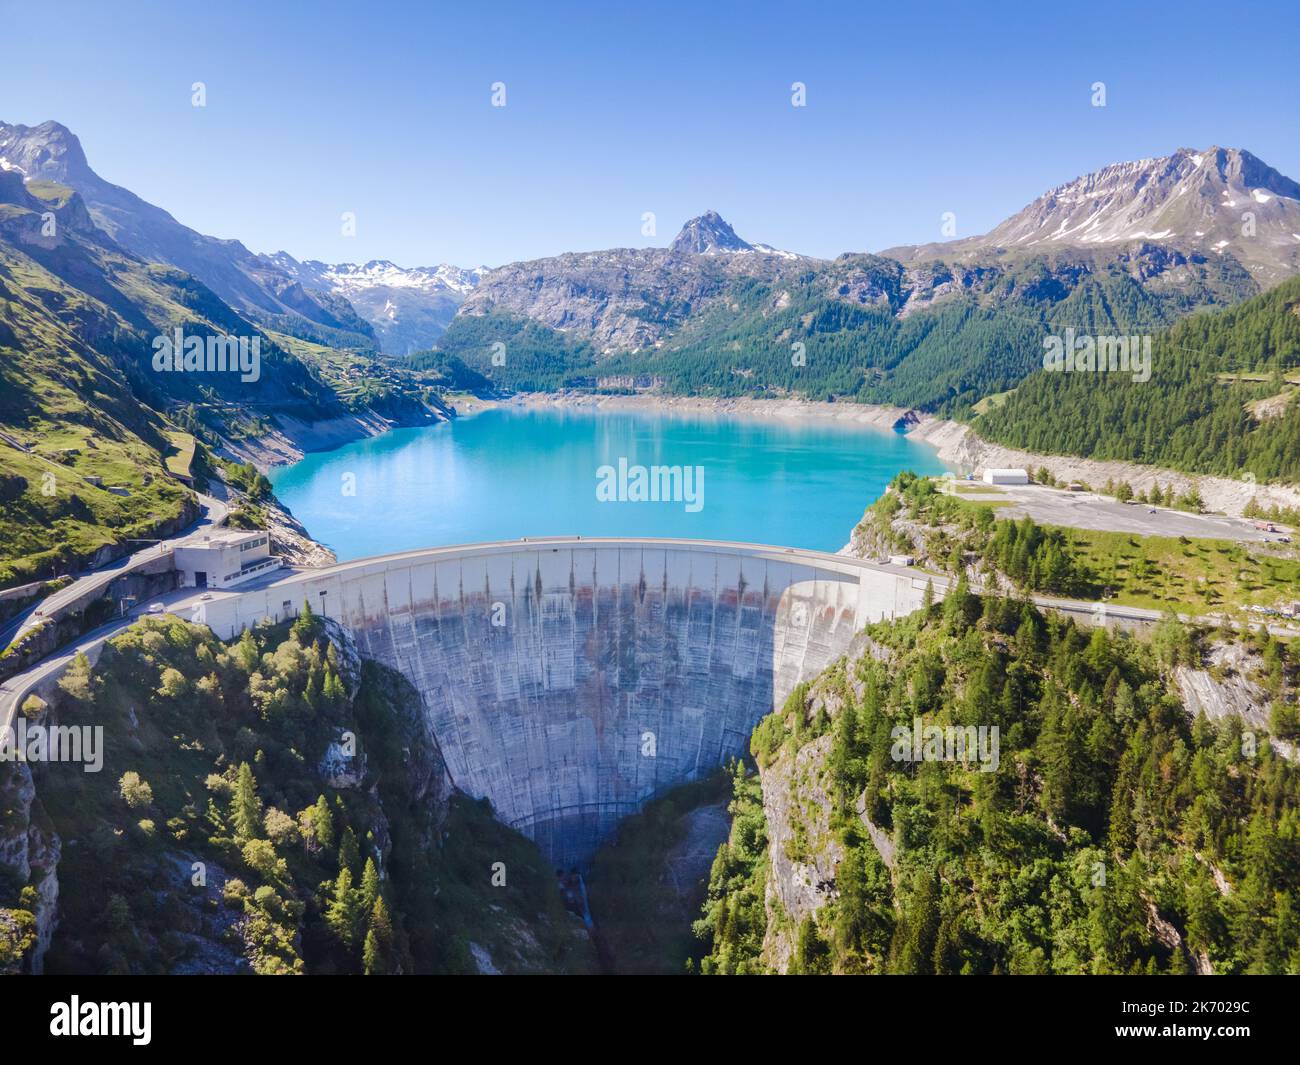 Barrage d'eau et lac réservoir vue aérienne dans les montagnes des Alpes en été générant de l'hydroélectricité. Faible encombrement CO2, décarbonisation, énergie renouvelable, su Banque D'Images